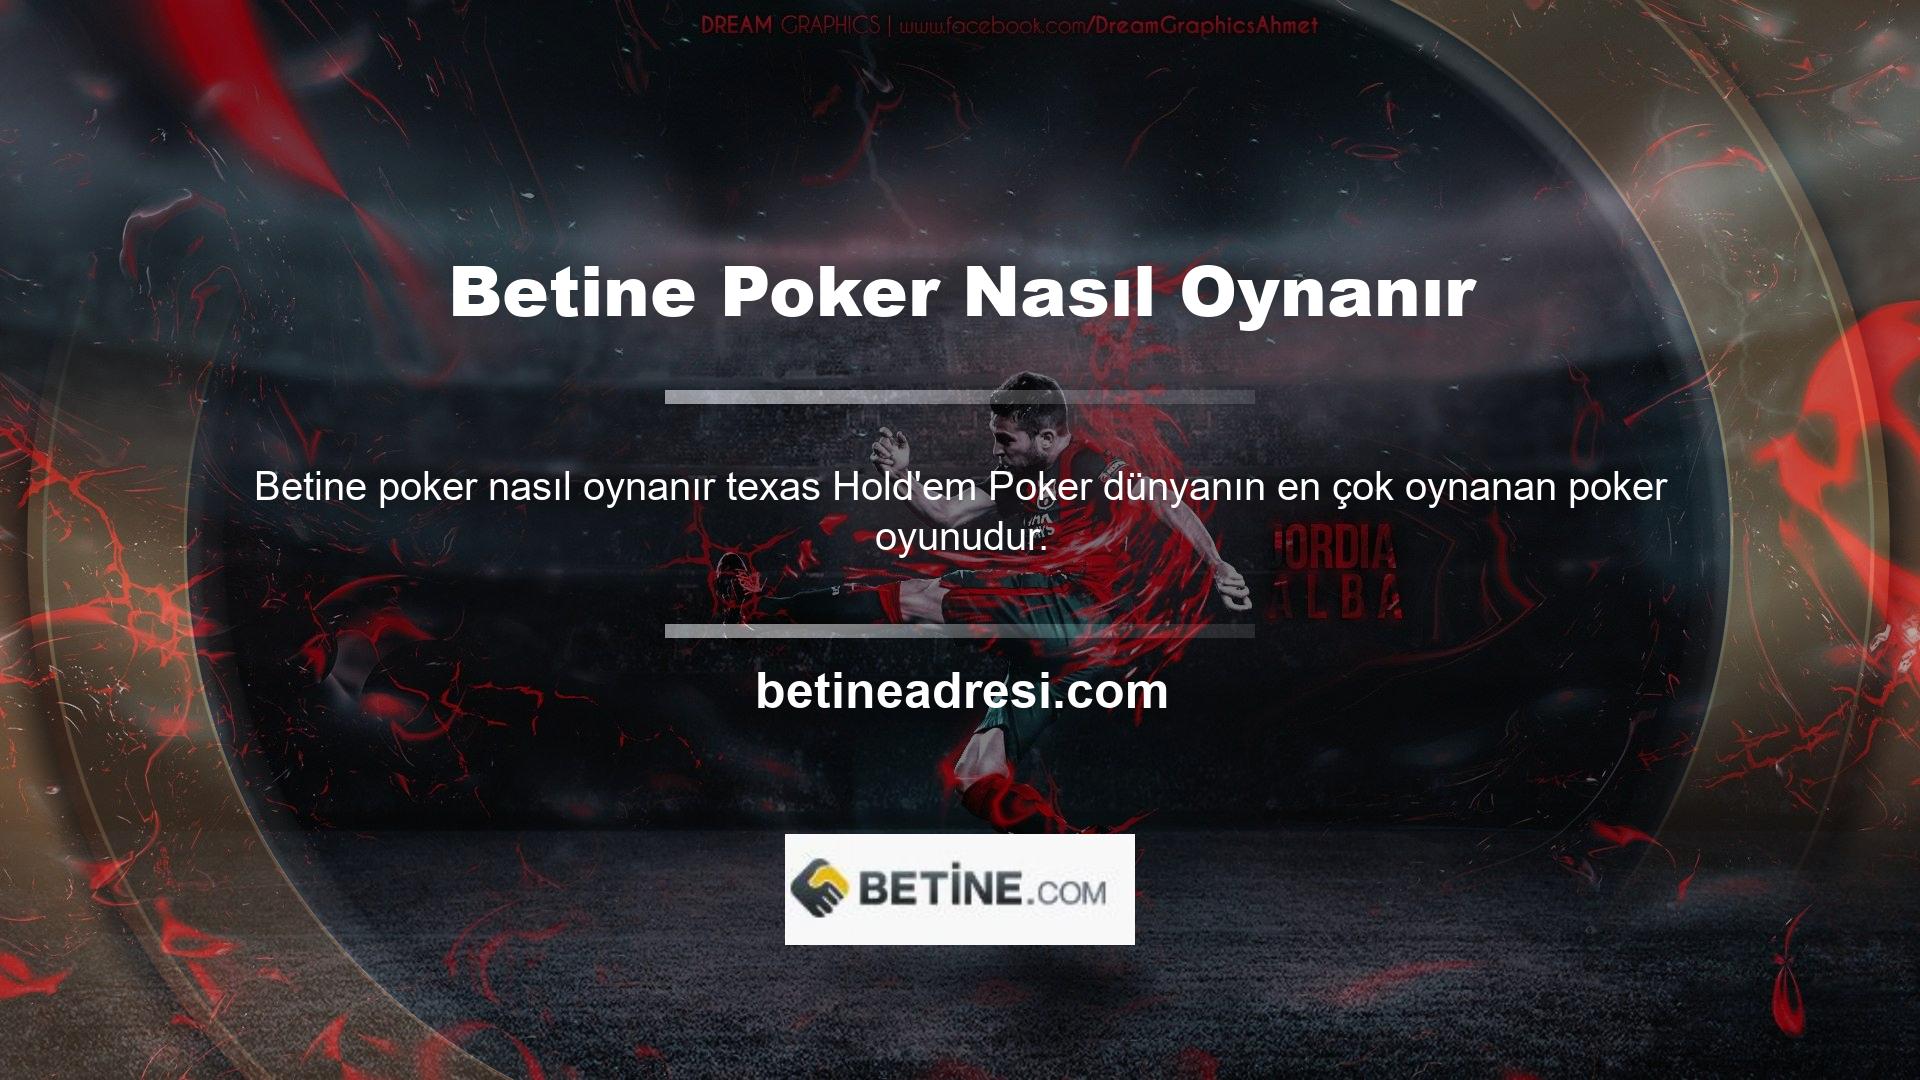 Canlı casino oyunları arasında Betine, poker lobisinden ayrı bir lobide canlı poker masası bulunan, poker söz konusu olduğunda oldukça güvenilir bir sitedir